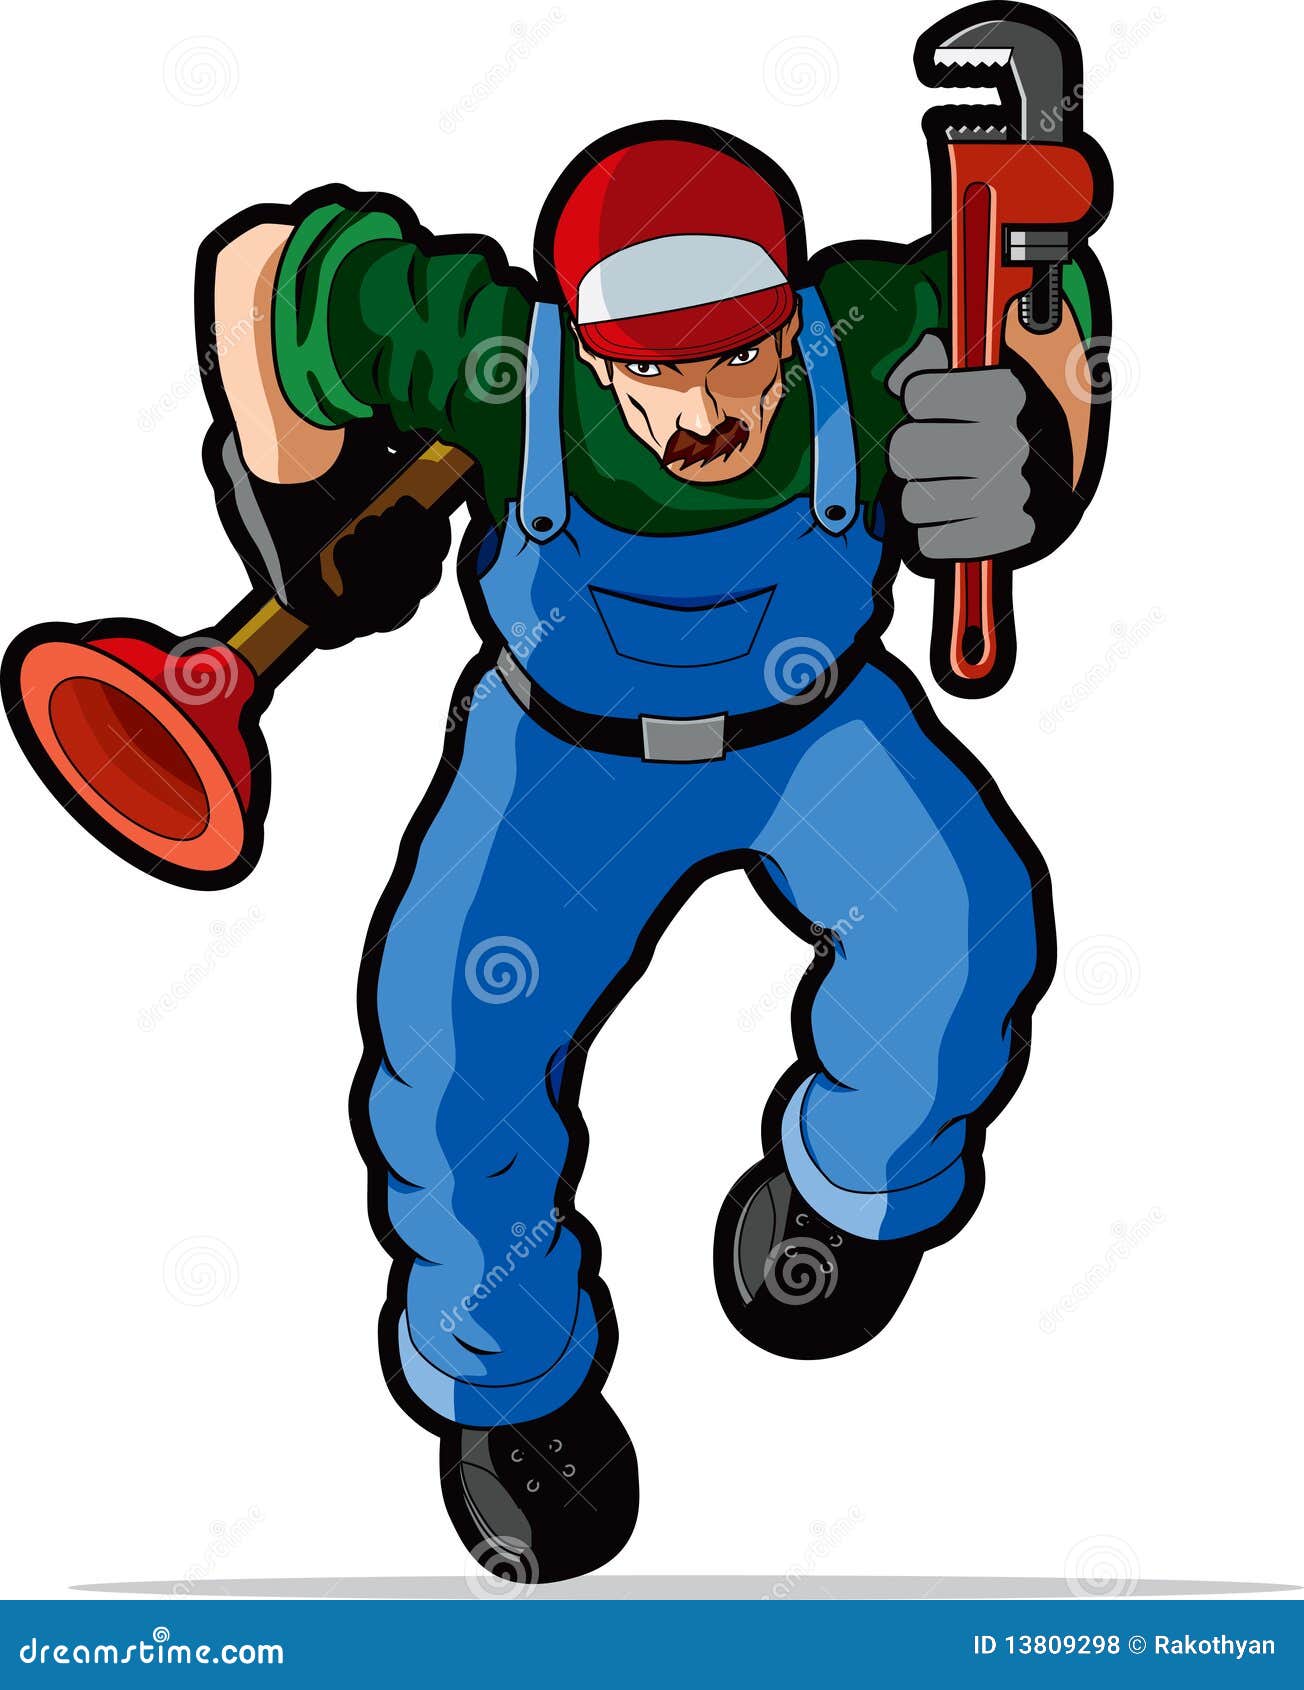 plumber-illustration-13809298.jpg